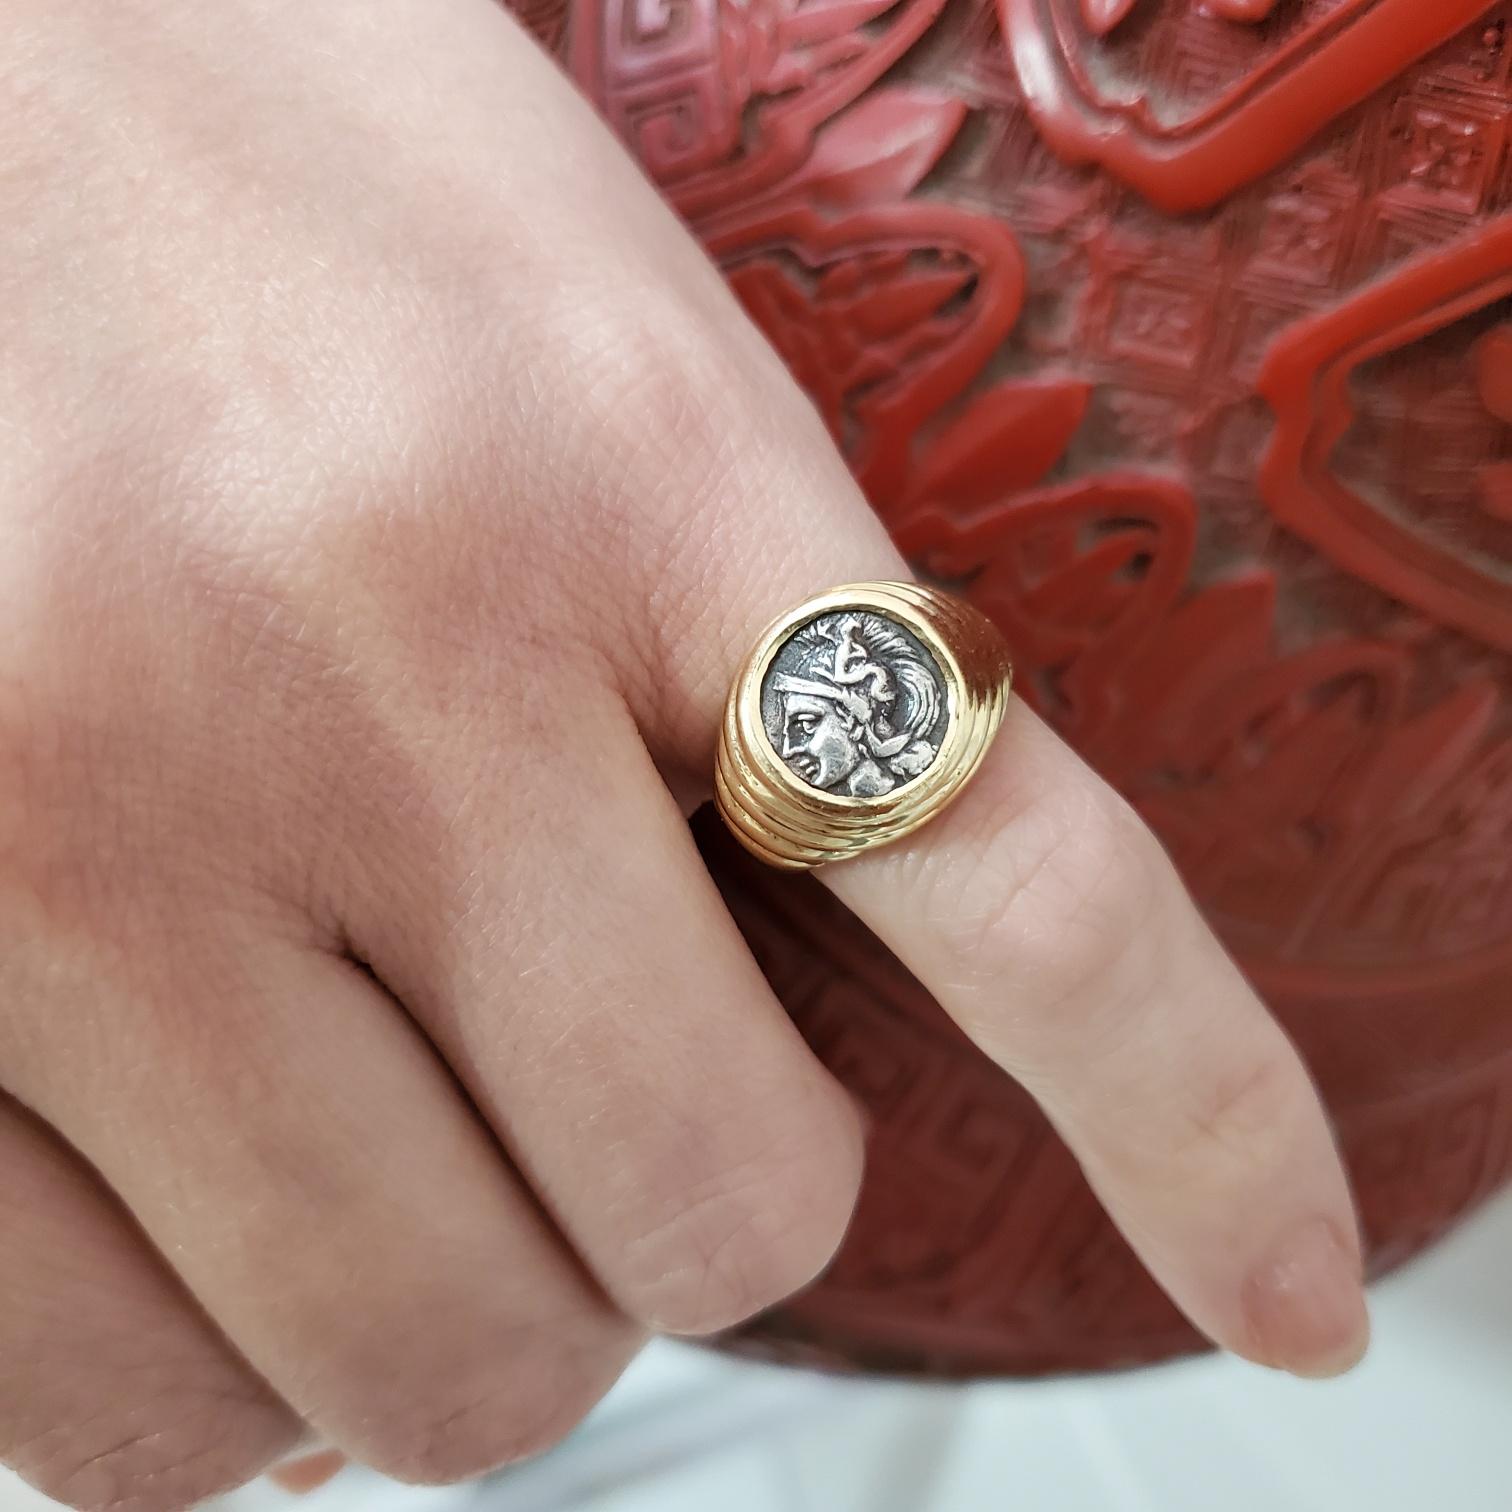 Siegelring mit einer antiken griechischen Münze, entworfen von Bvlgari.

Sehr schöner Moneta Siegelring, der in Rom, Italien, vom Schmuckhaus Bvlgari in den späten 1970er Jahren geschaffen wurde. Dieser Ring ist aus massivem 18-karätigem,